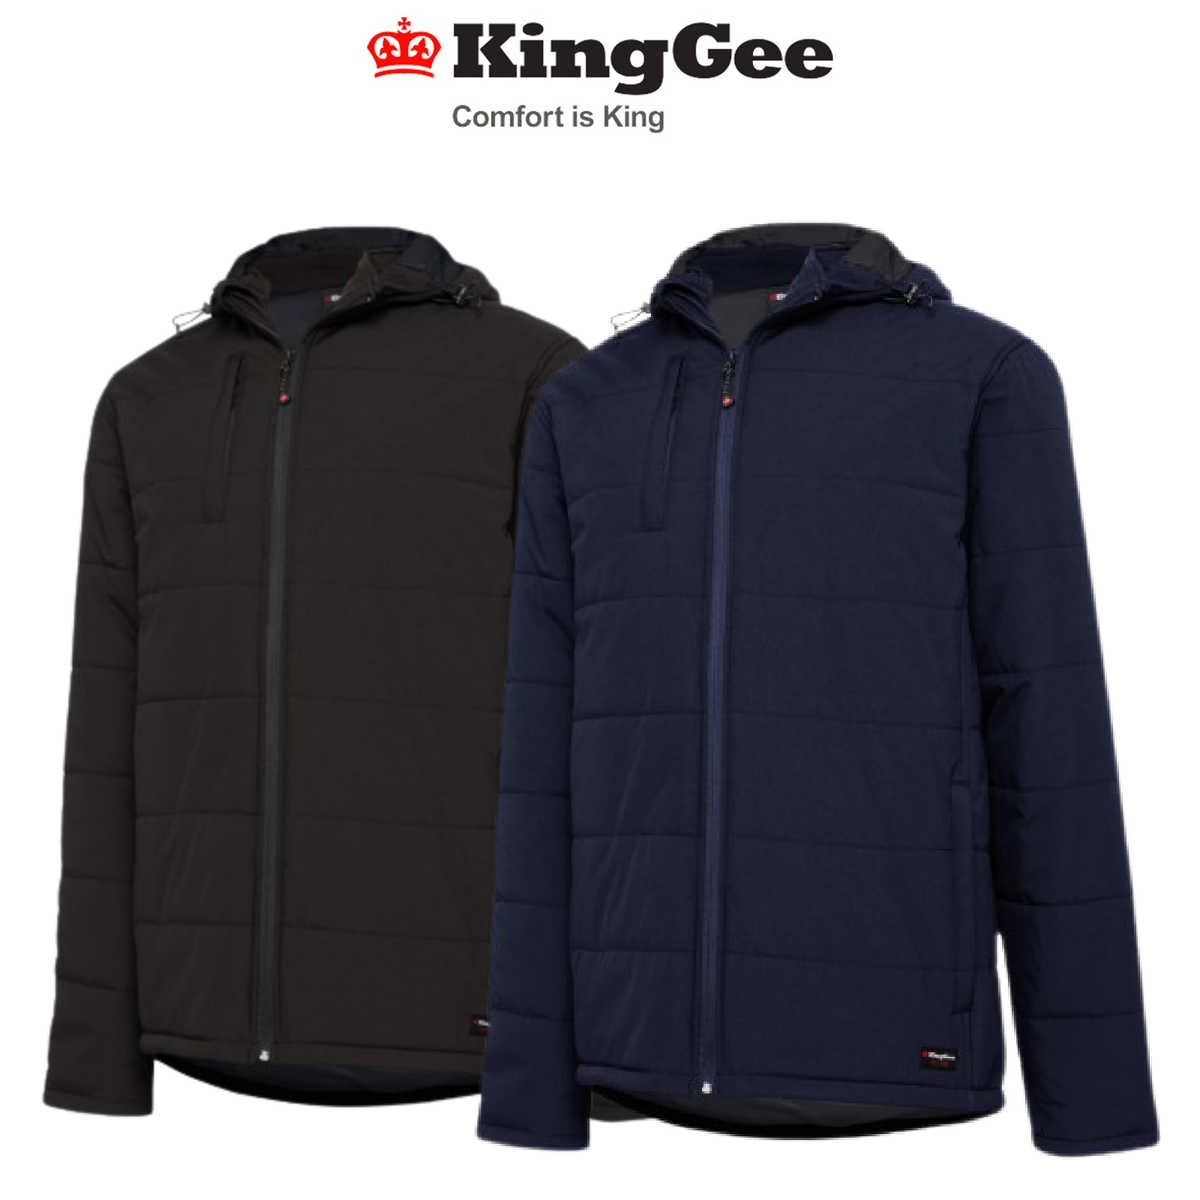 KingGee Mens Puffer Jacket Storm Guard Waterproof Ripstop Hood Work K05010